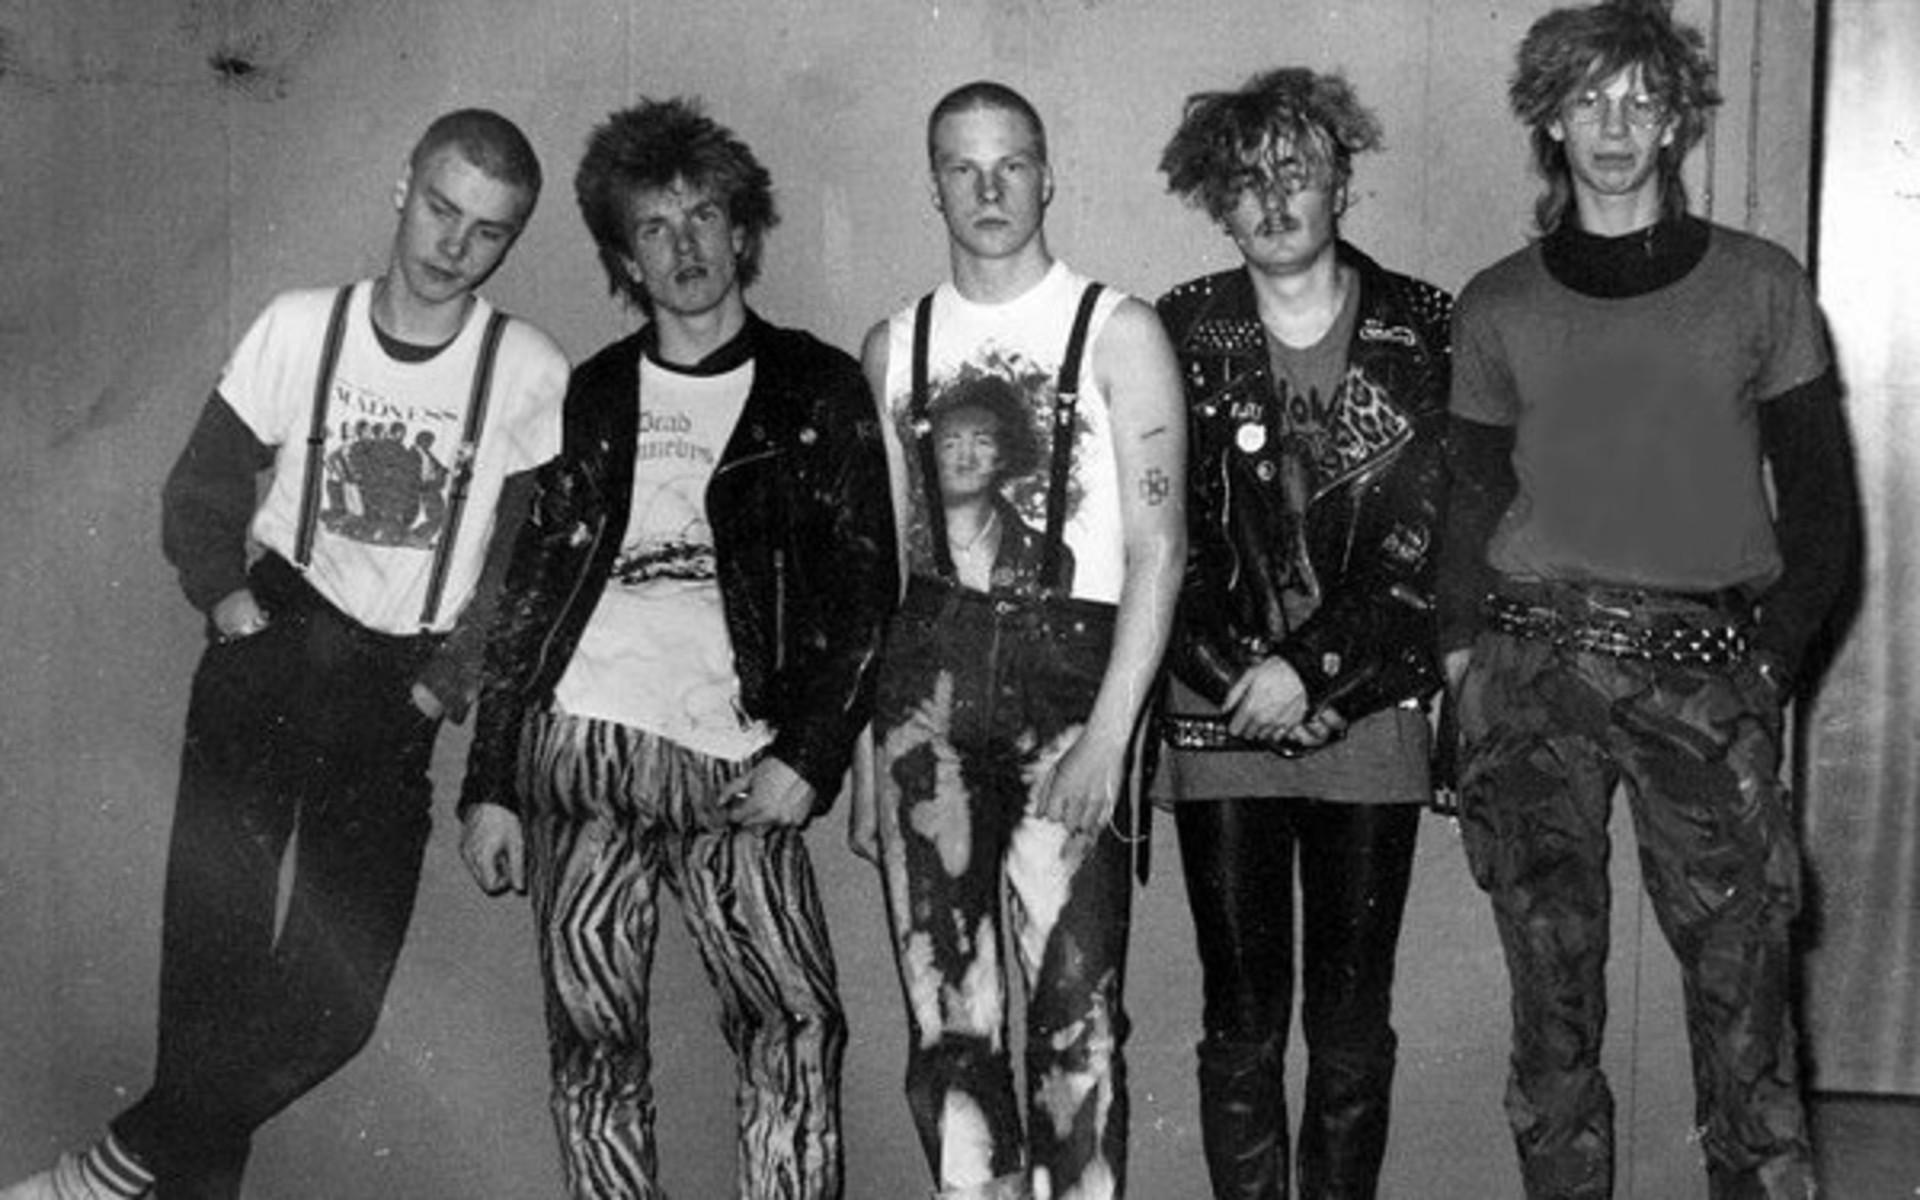 Bandet Ugly Spots började skriva låtar 1982 i Oxelösund. Bland medlemmarna i bandet fanns bröderna Ulf och Bruno Hansen. Idag är de aktiva som trummis respektive sångare igen (efter ett längre avhopp) i Ultima Thule – bandet som blivit den svenska rasismens soundtrack.